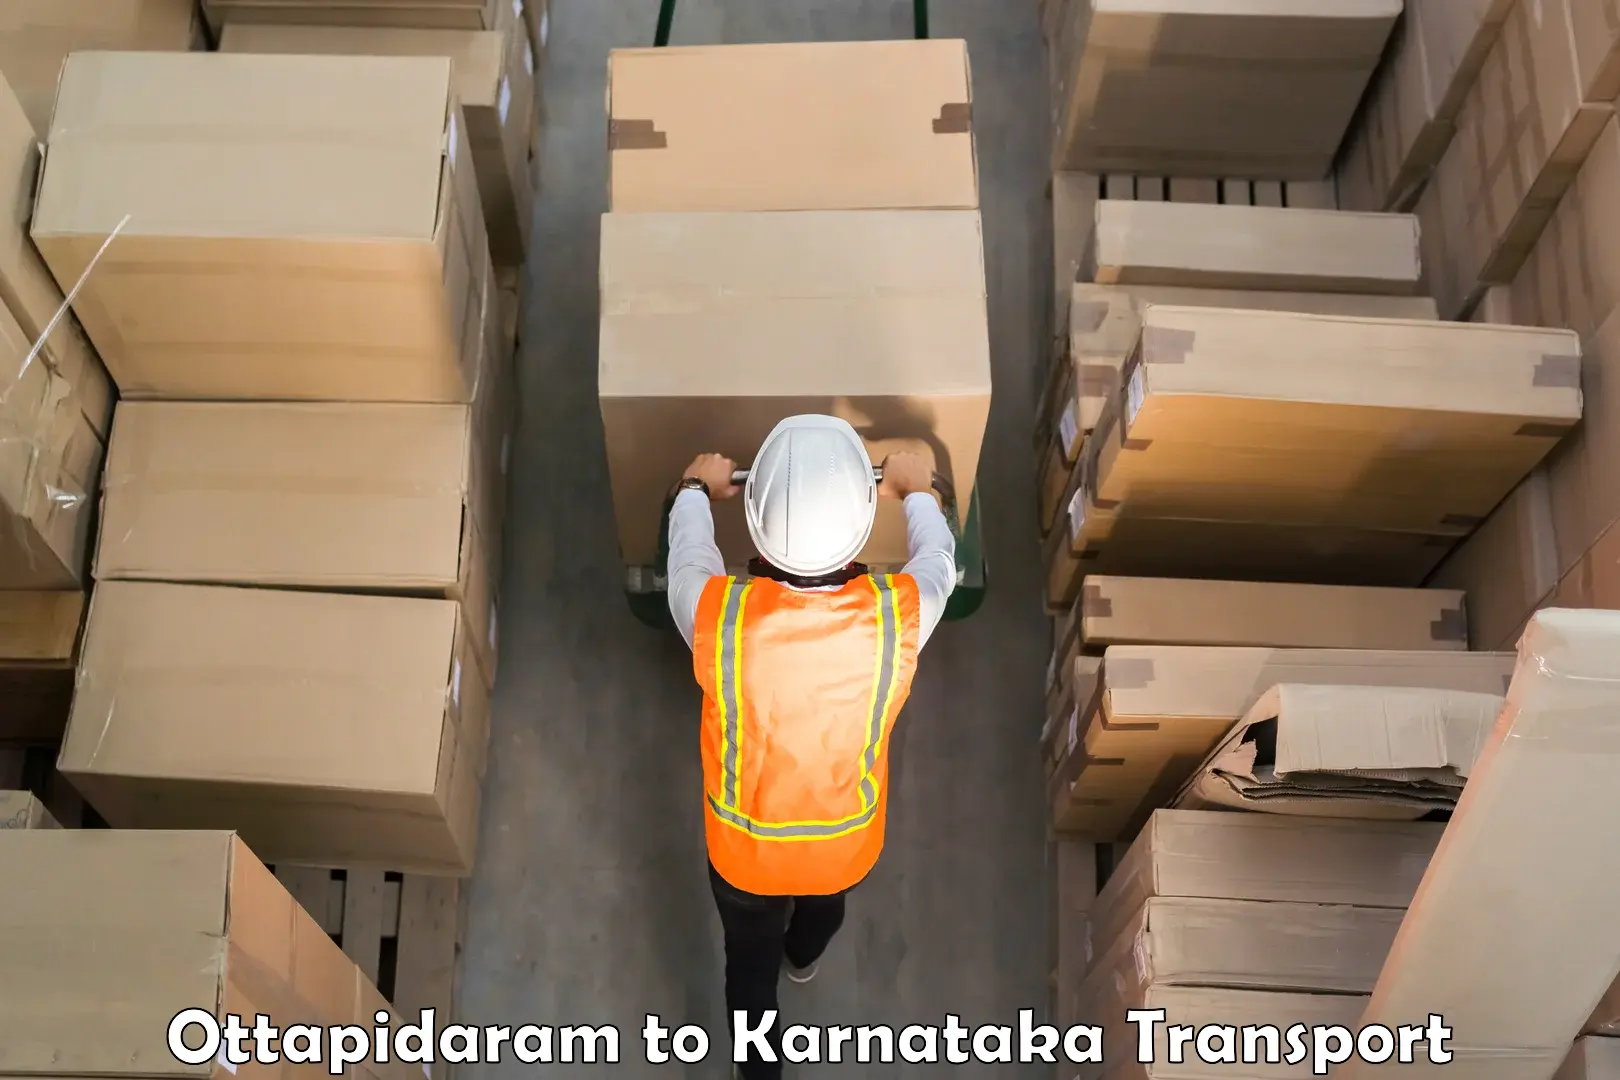 Truck transport companies in India Ottapidaram to Shiralakoppa